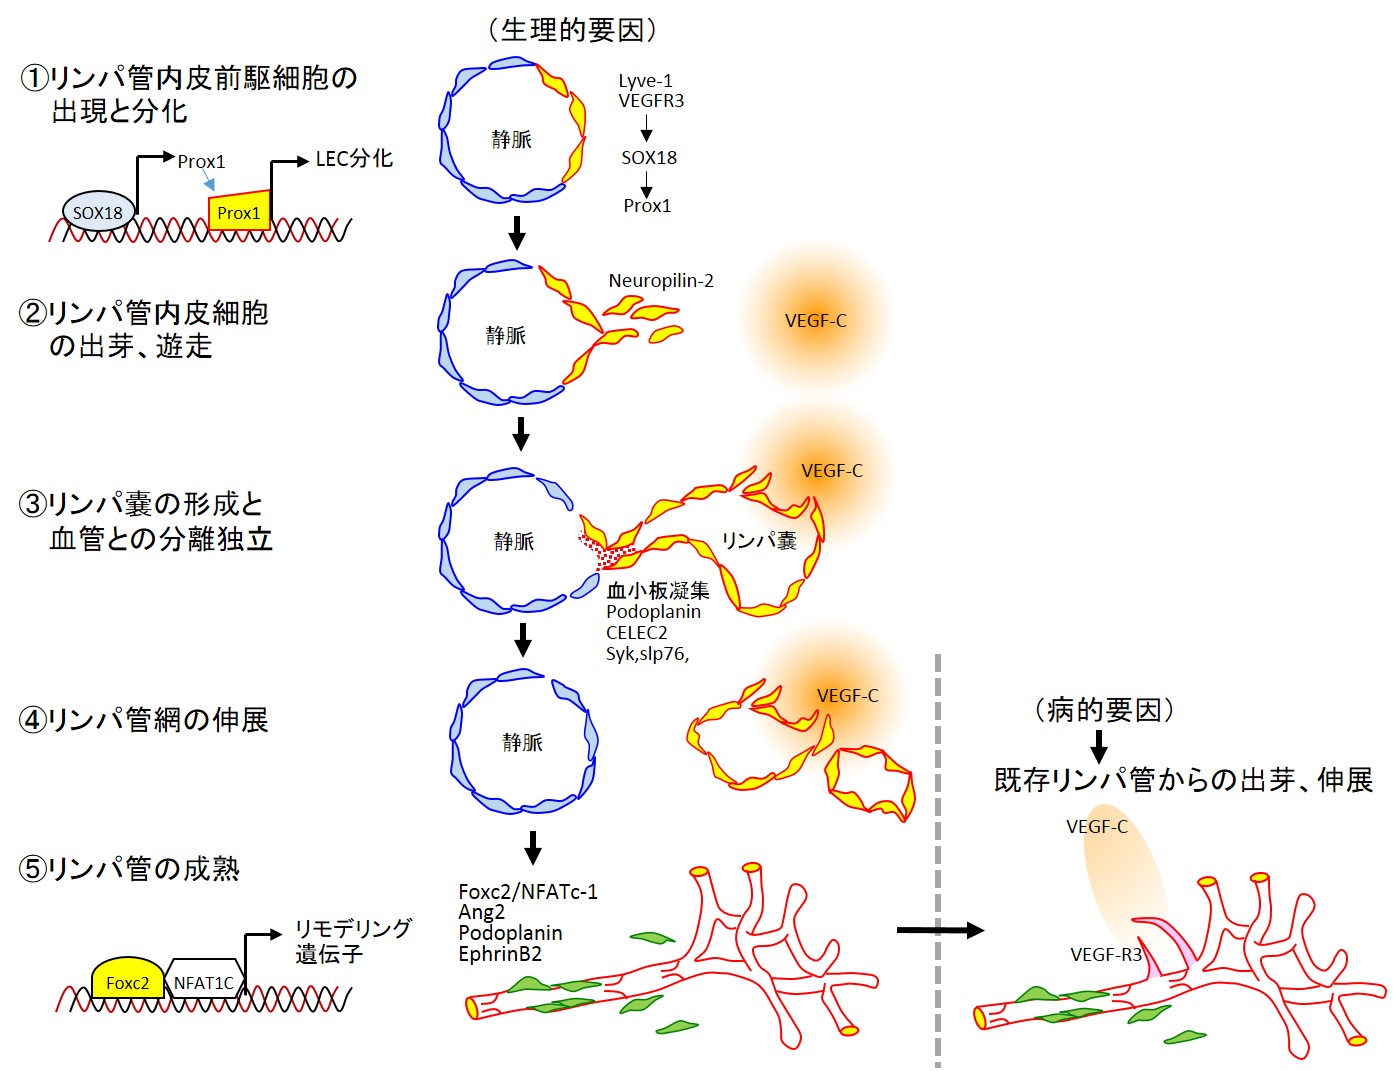 図１．リンパ管発生とリンパ管新生（参考文献２　Figure2改変）